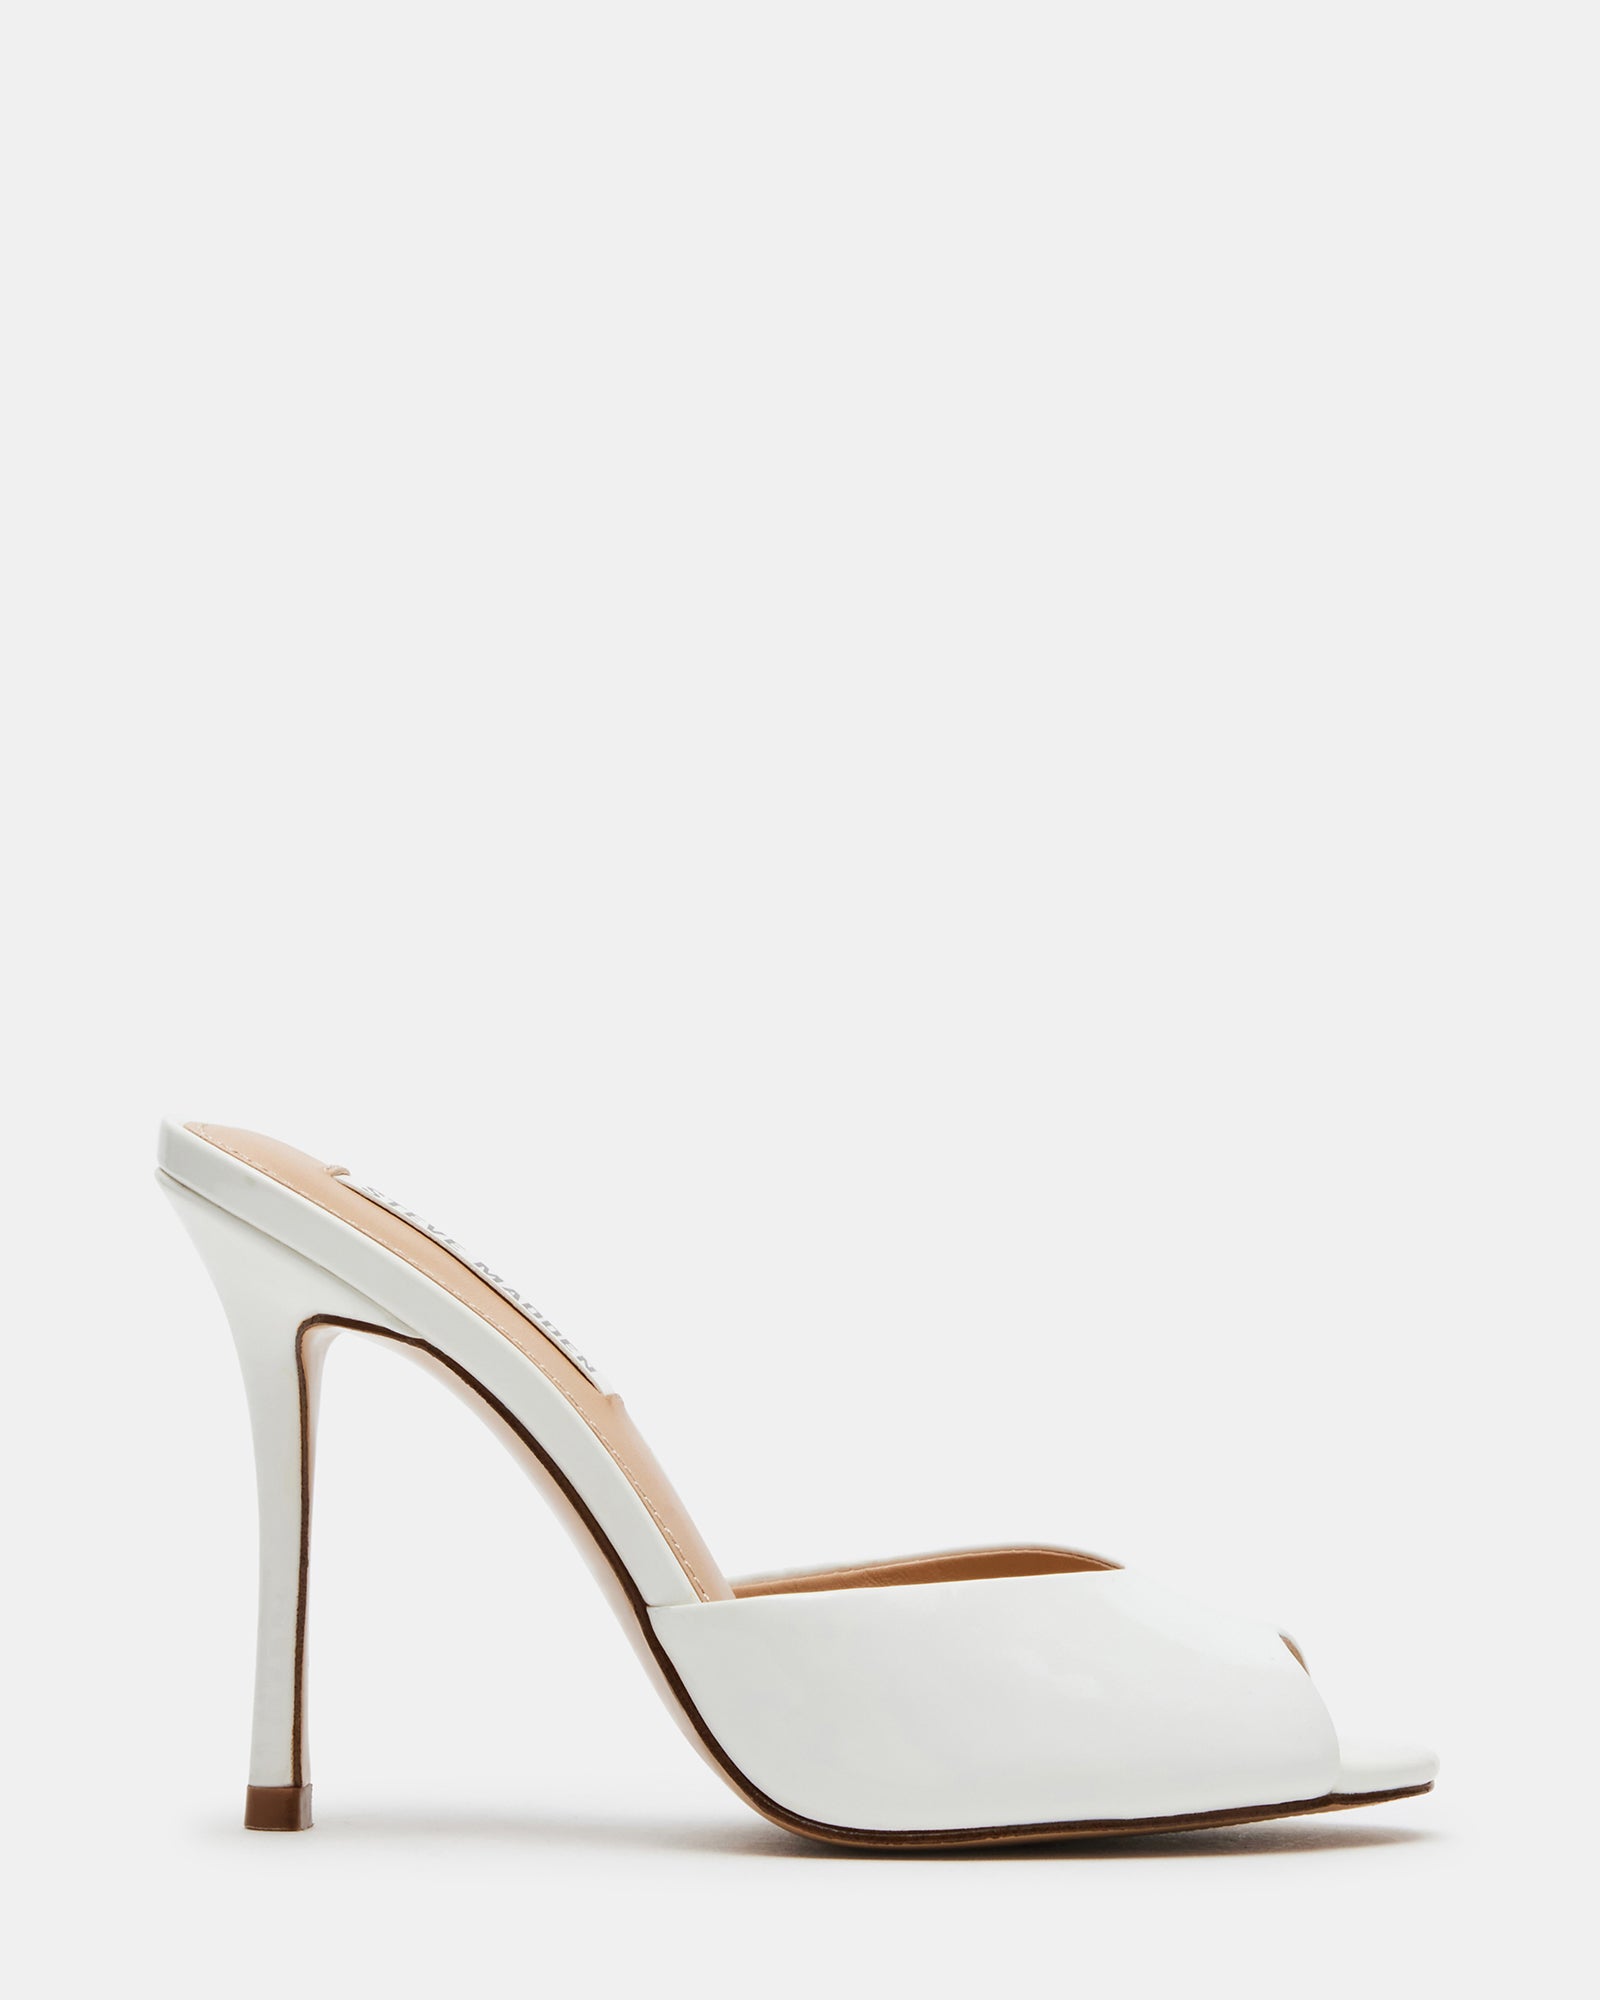 Shop White Stiletto Heels | DSW